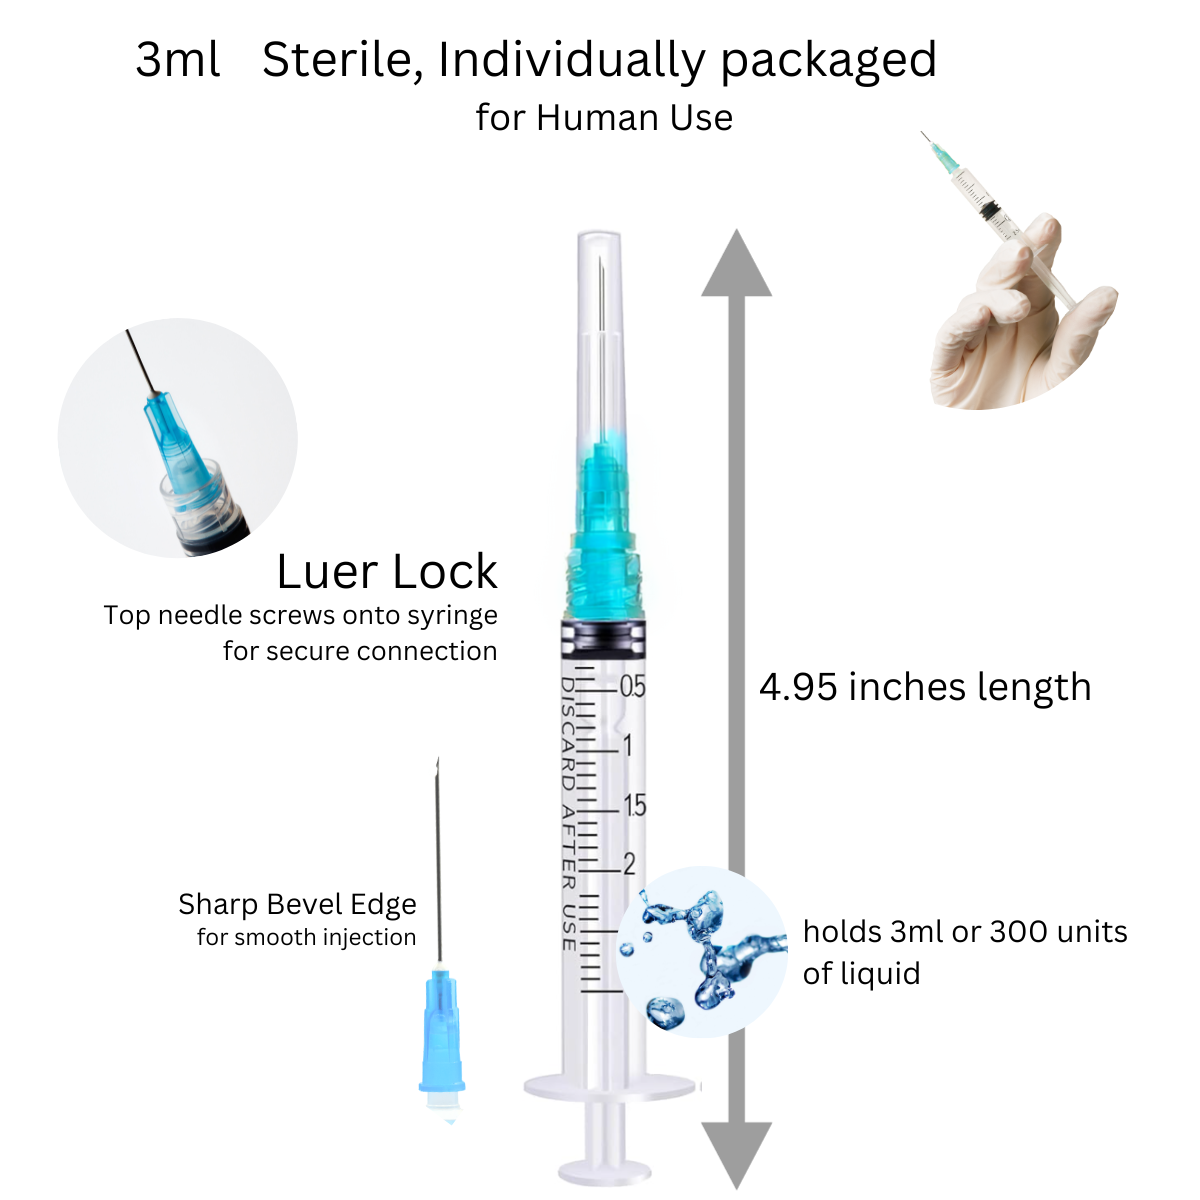 25g, 1 Needle - 3cc/3ml Syringe